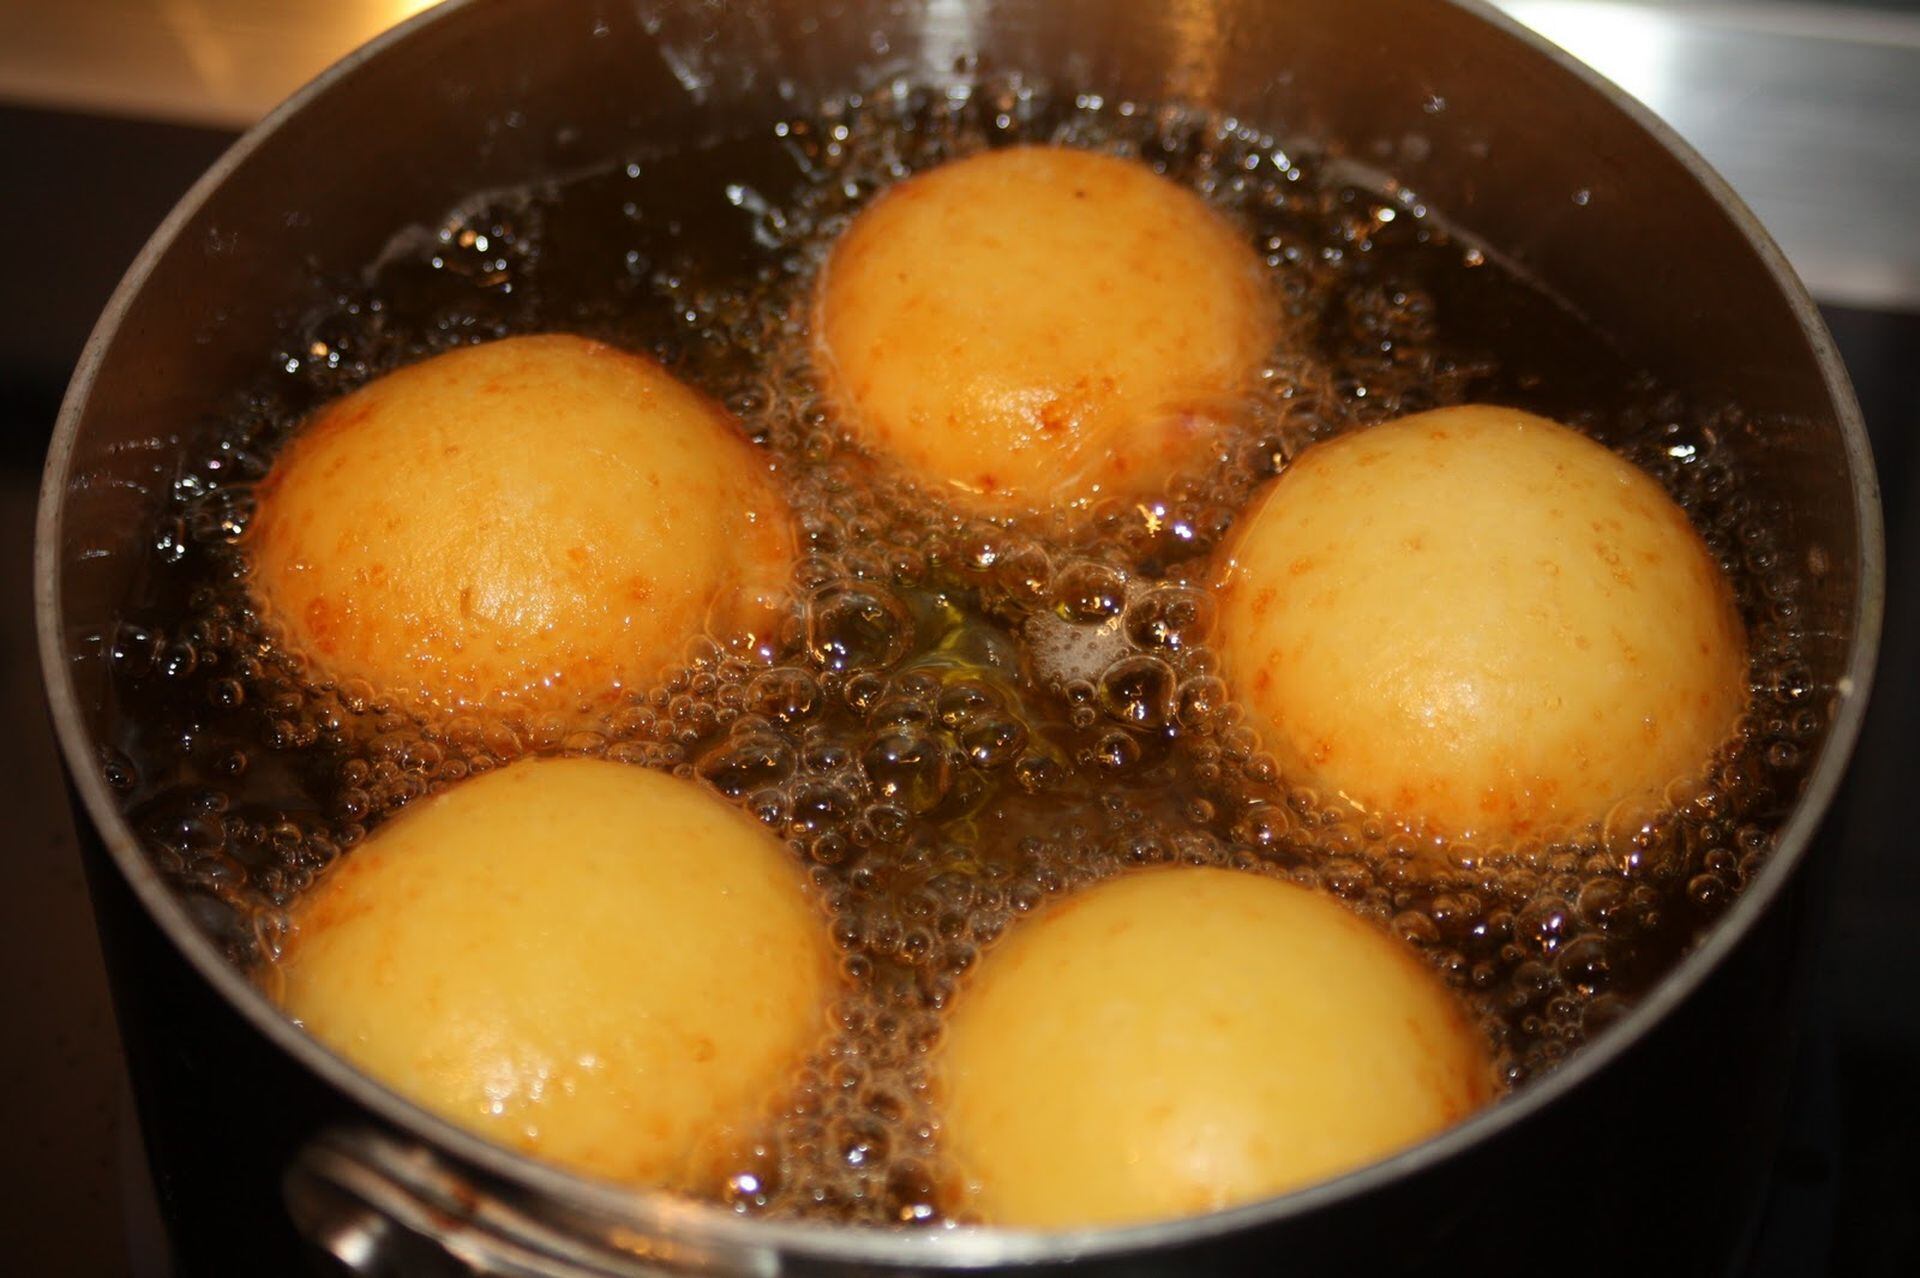 Aliste harina, aceite y huevos: esta es la receta para preparar buñuelos  caseros fácil y rápido